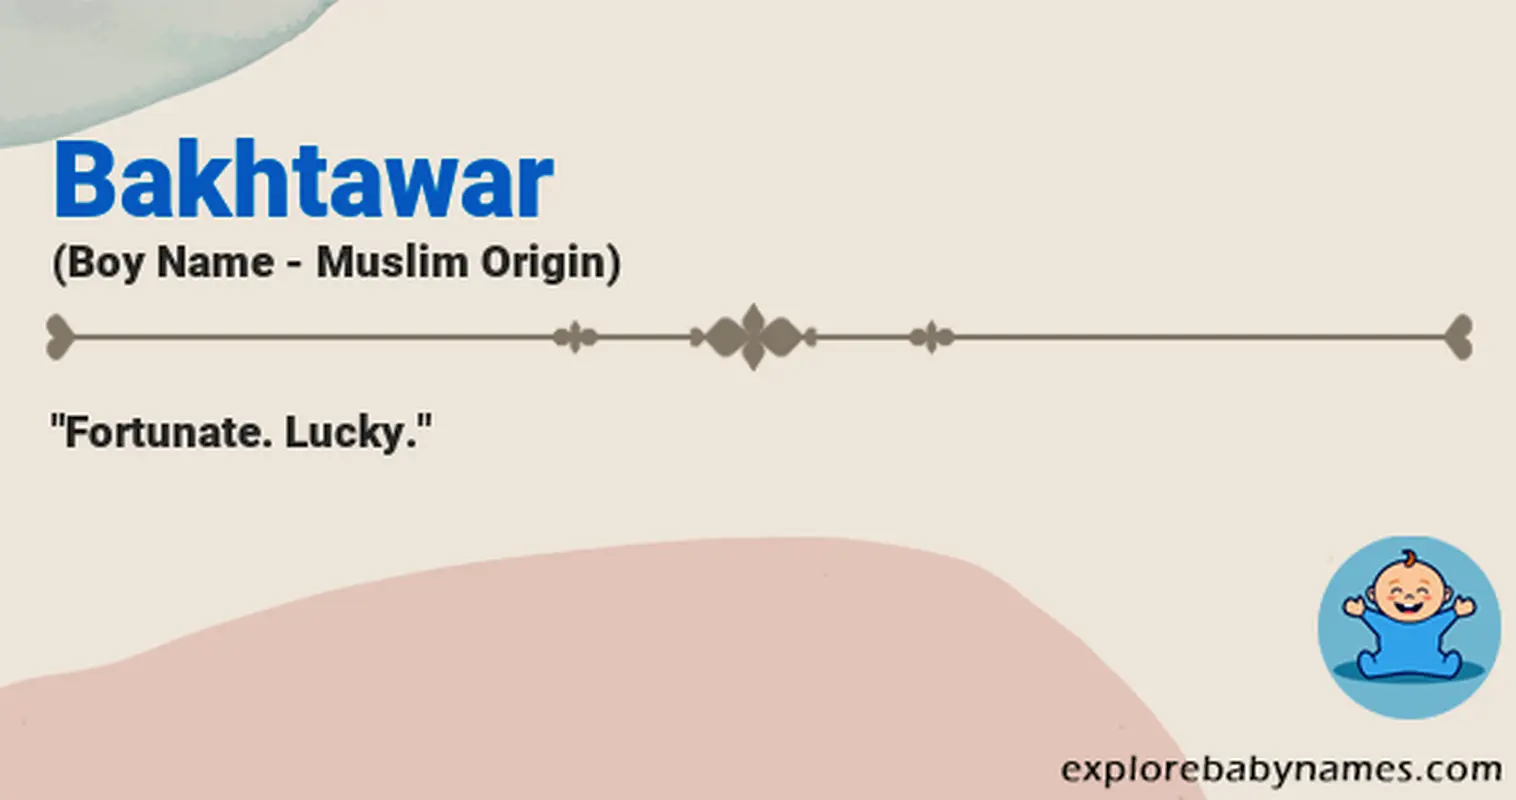 Meaning of Bakhtawar